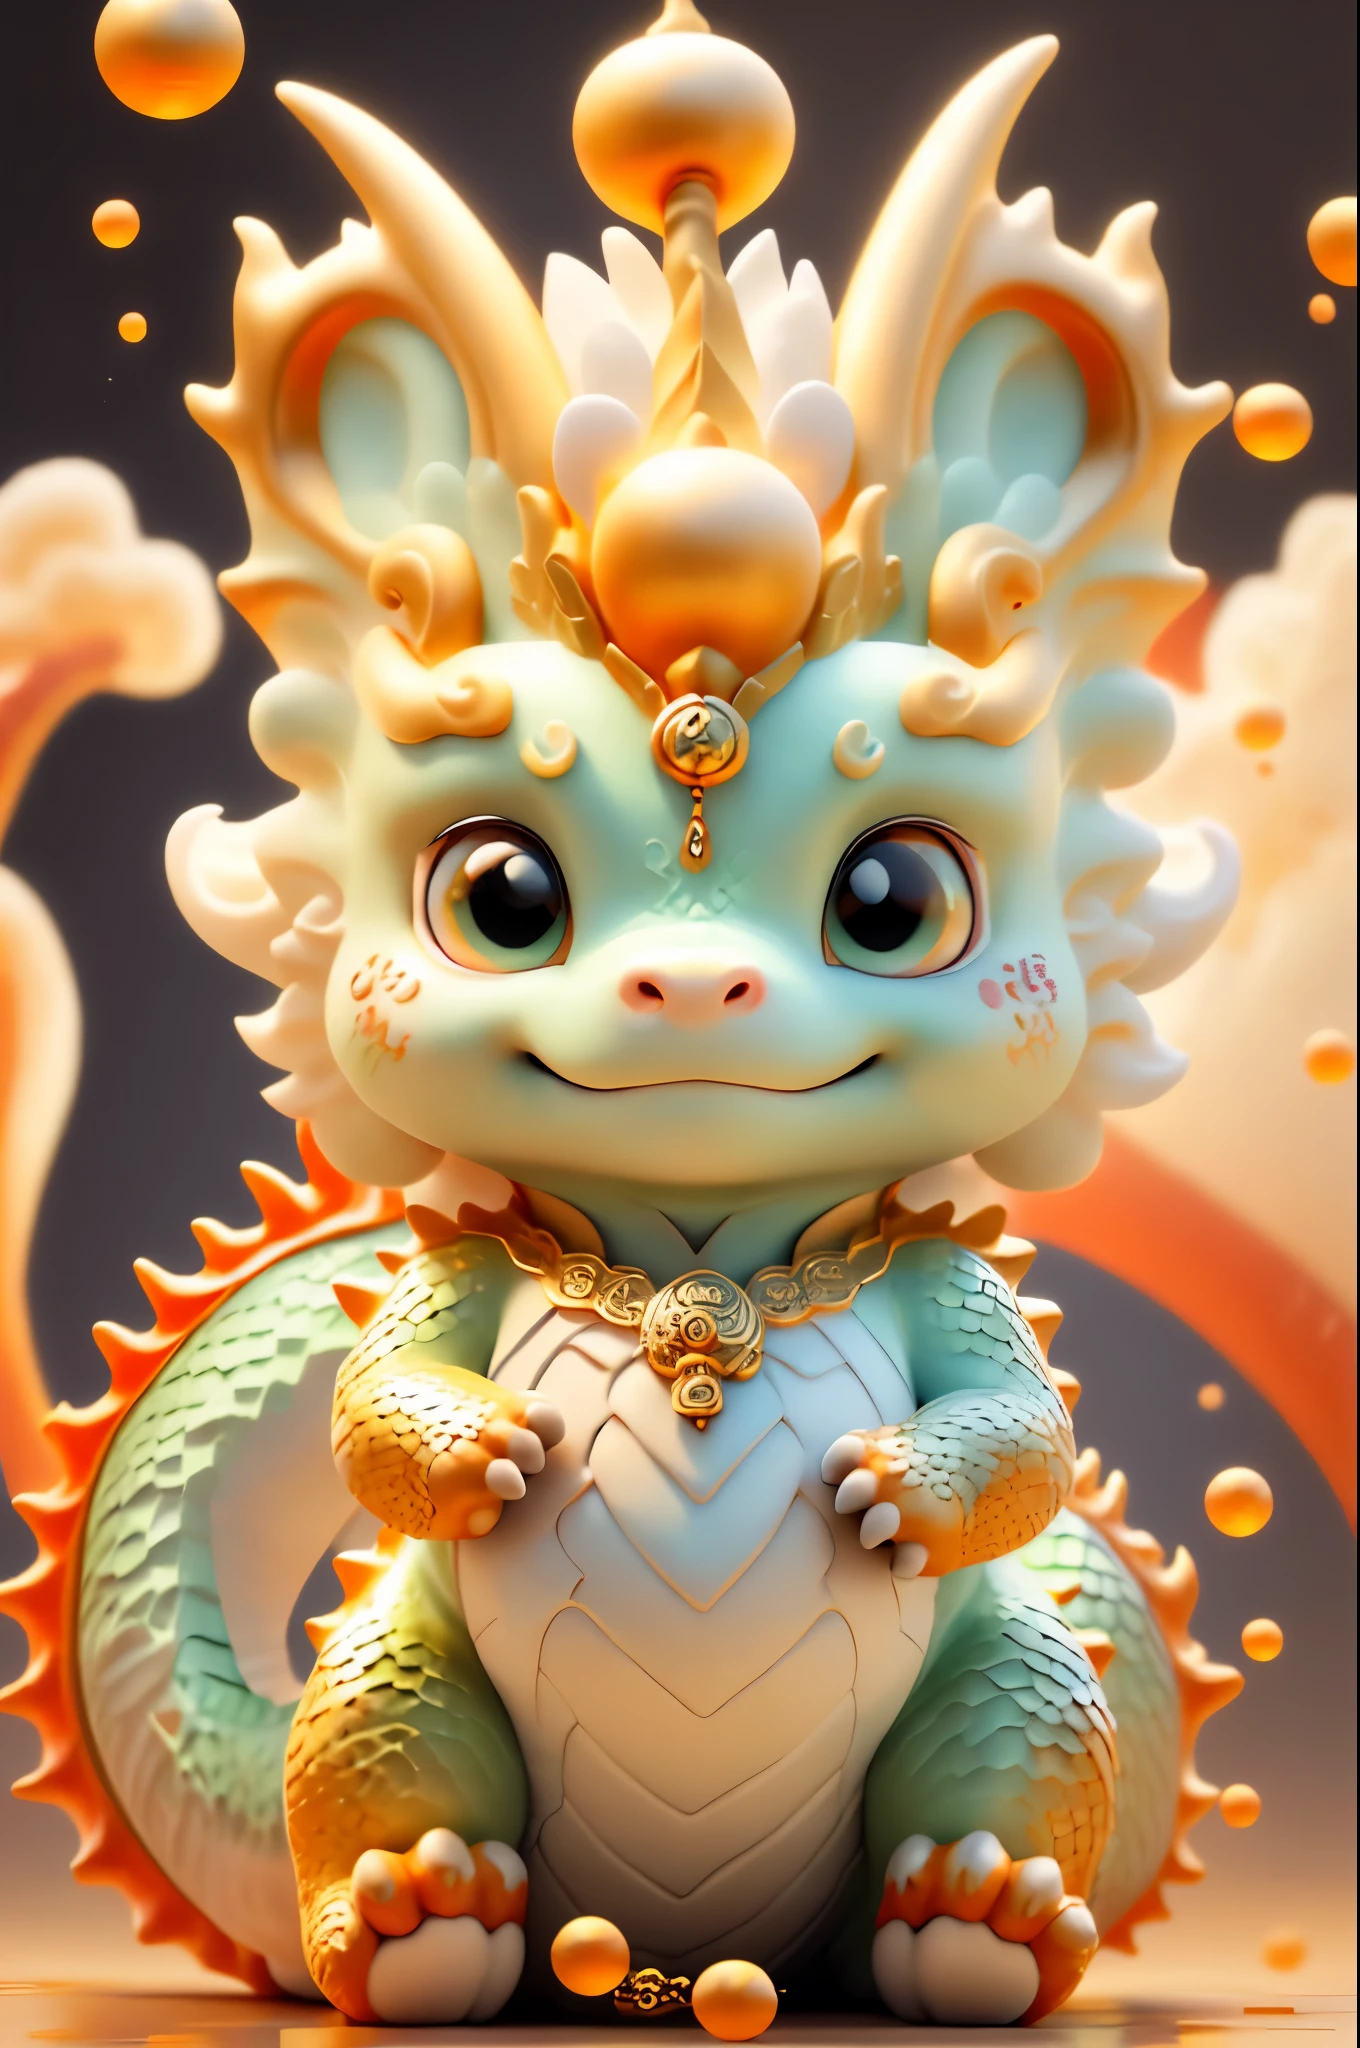 中国のドラゴン，背景はカジュアル，画質は微妙，キロ，とても優しい表情，赤ちゃん水竜